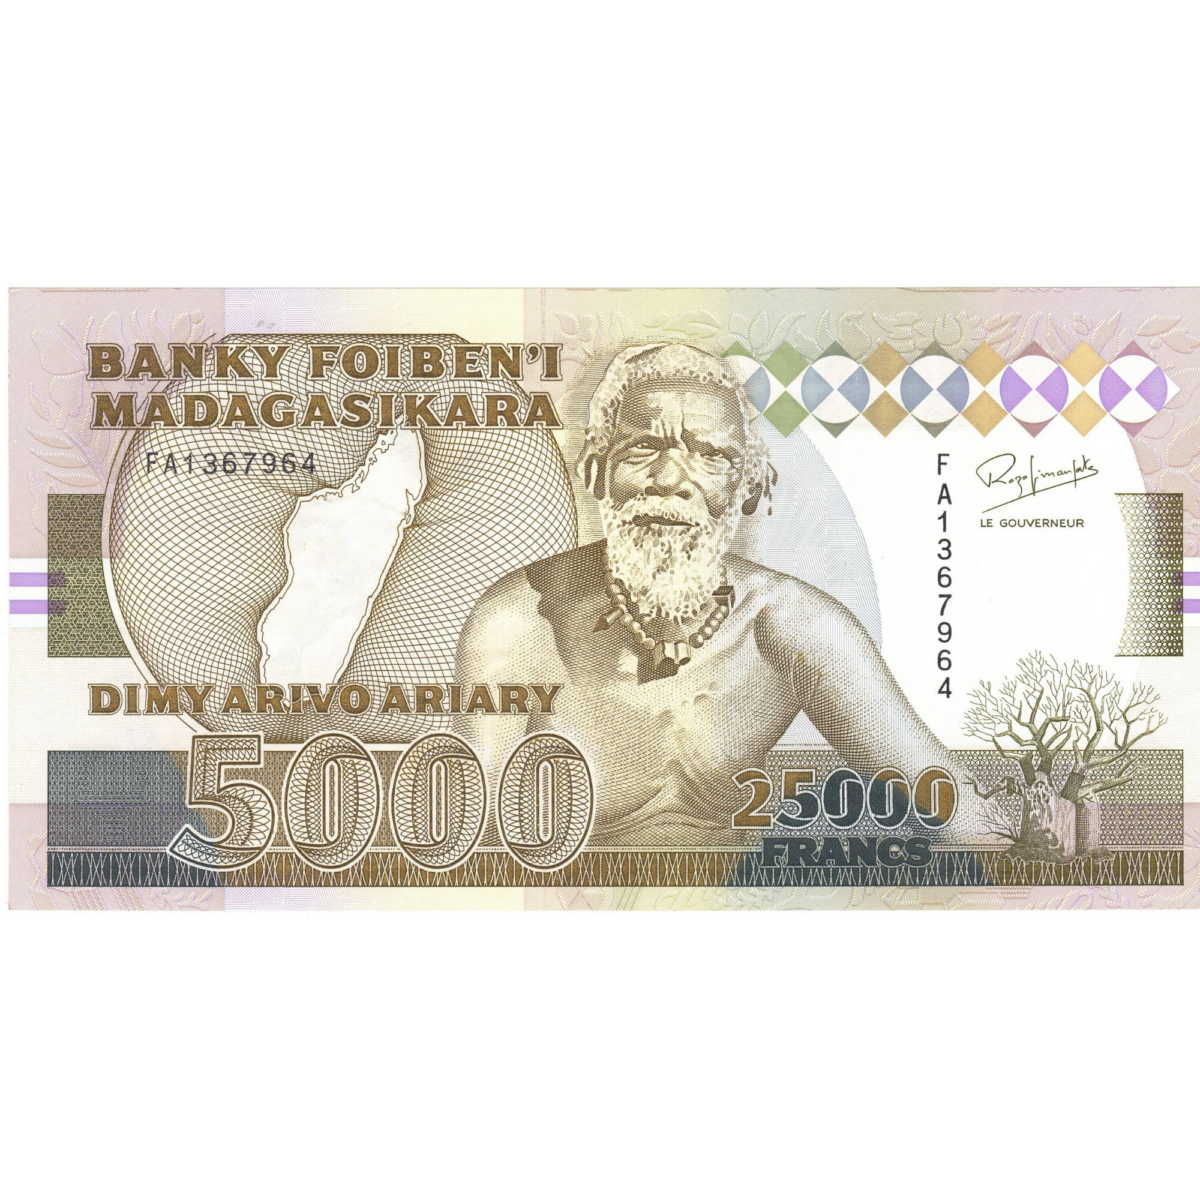 Madagascar 25000 francs 1993 revers 0031